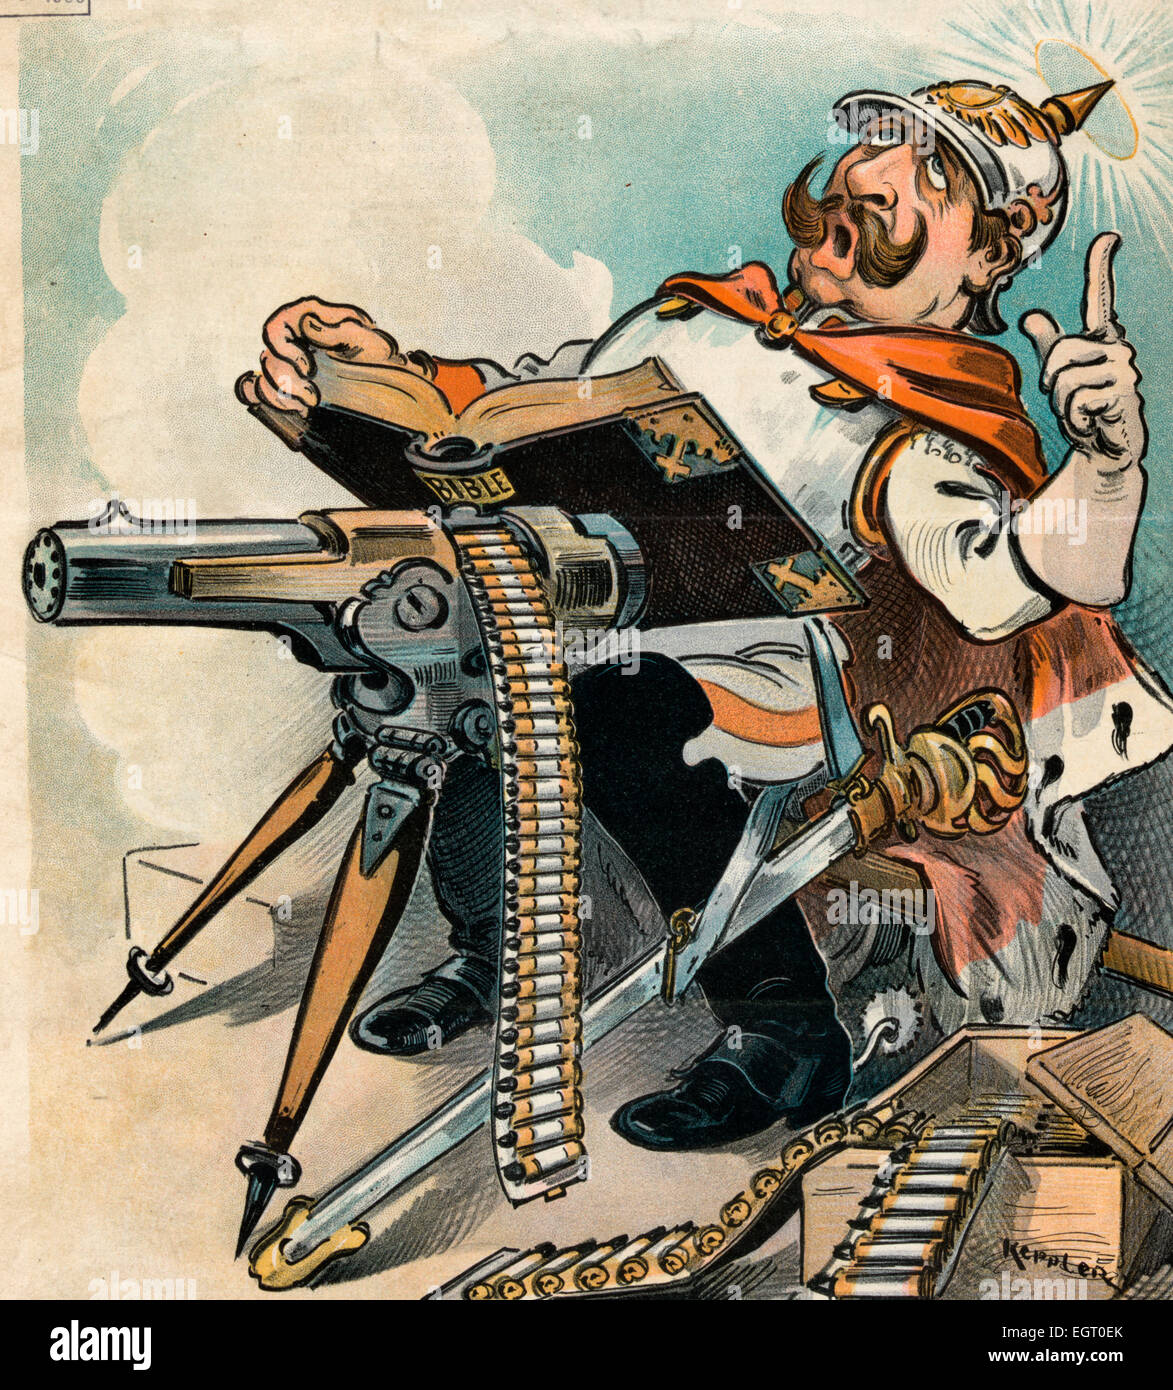 Il Vangelo secondo San Guglielmo - Illustrazione mostra Guglielmo II, Imperatore di Germania, con una Bibbia puntellato su una mitragliatrice, la lettura a voce alta dai vangeli; vi è una scatola di munizioni ai suoi piedi. Cartoon politico, 1900 Foto Stock